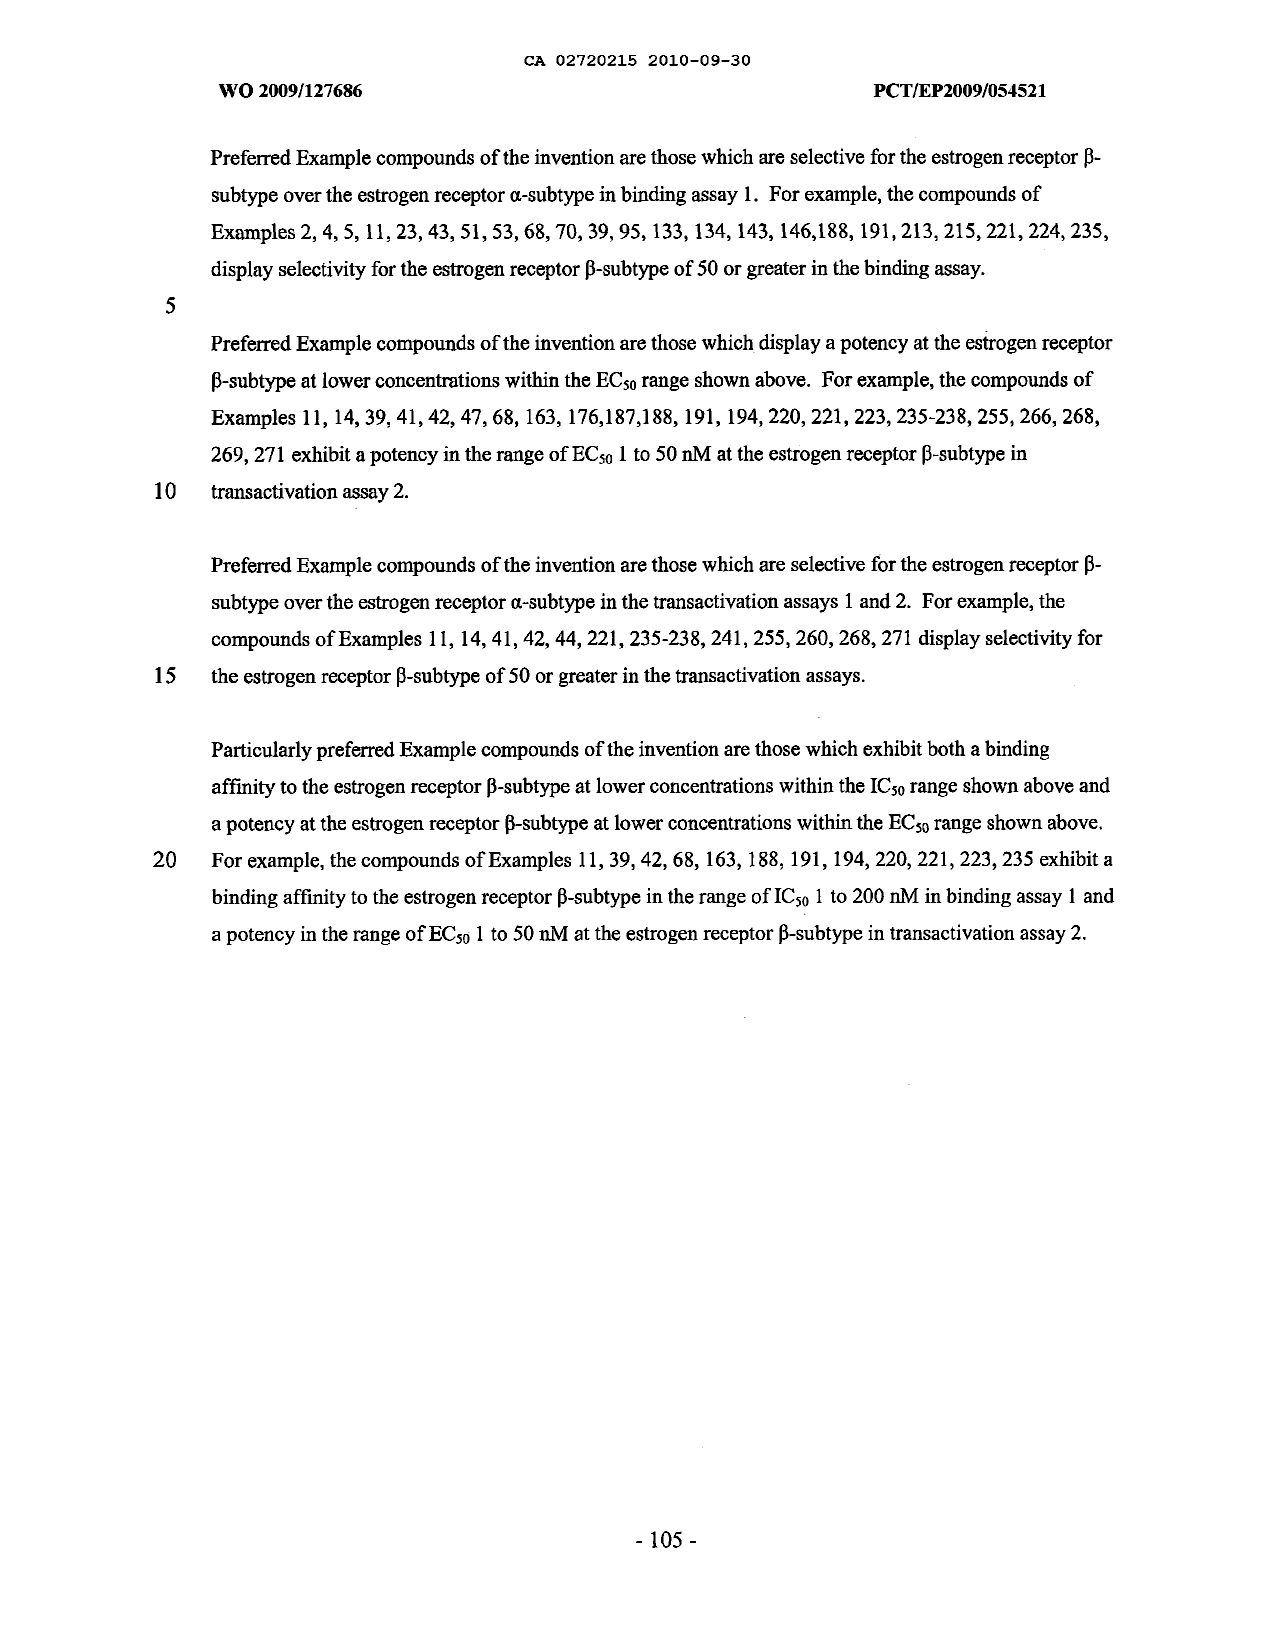 Document de brevet canadien 2720215. Description 20161218. Image 105 de 105